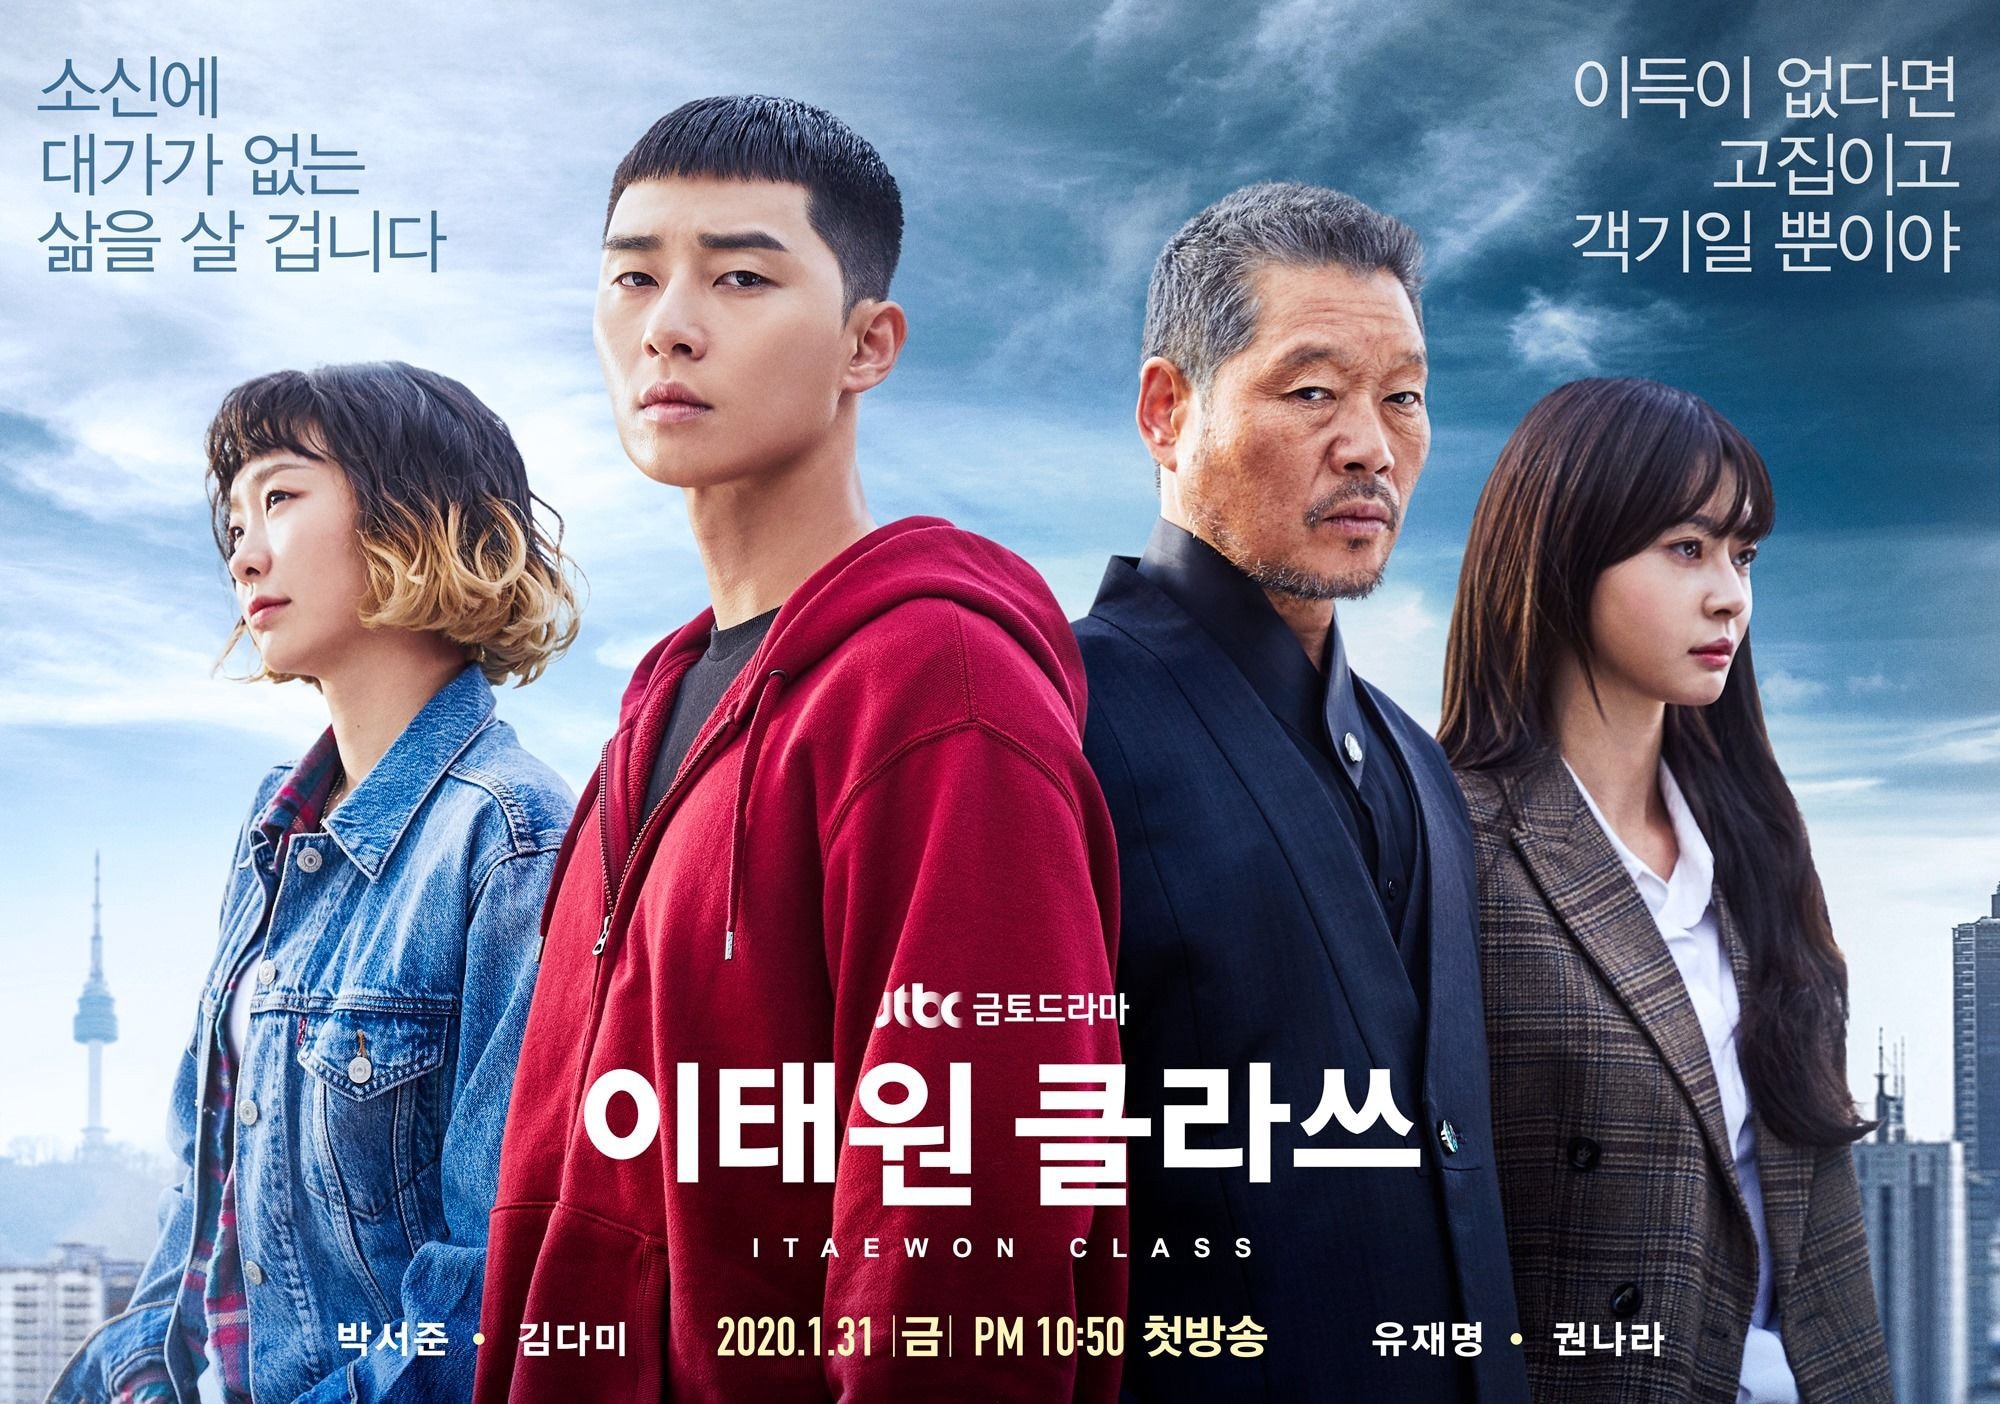 Top phim bộ tình cảm Hàn Quốc dễ dàng giữ chân bạn ở nhà trong mùa dịch Covid-19 - Ảnh 3.